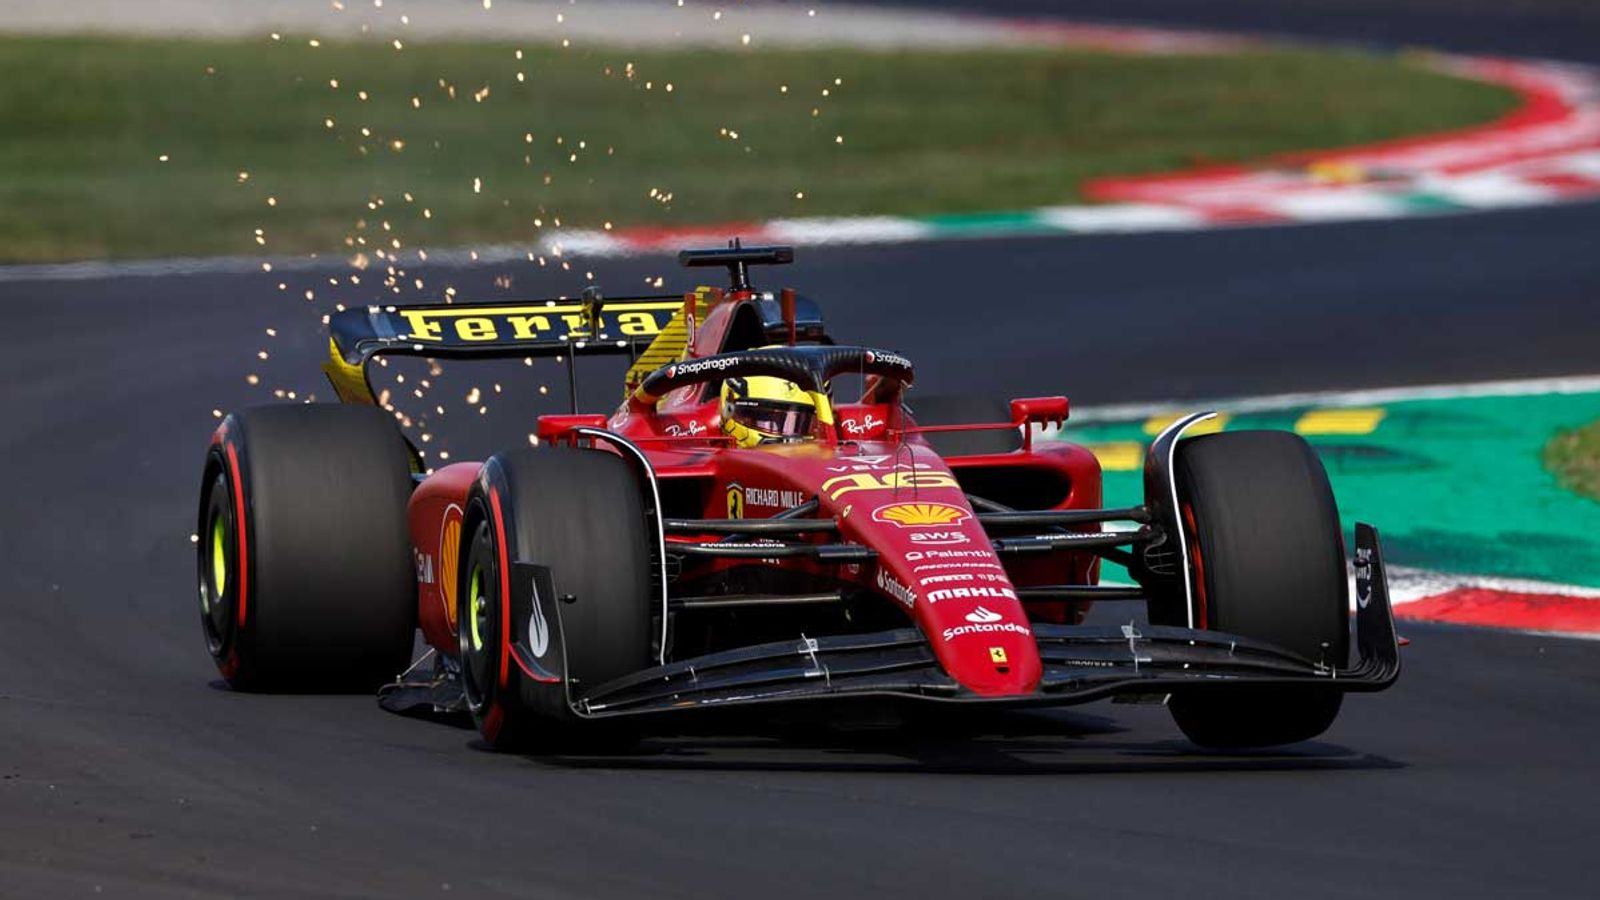 Formel 1 Die Chancen auf einen Ferrari-Sieg von Leclerc in Monza stehen gut Formel 1 News Sky Sport